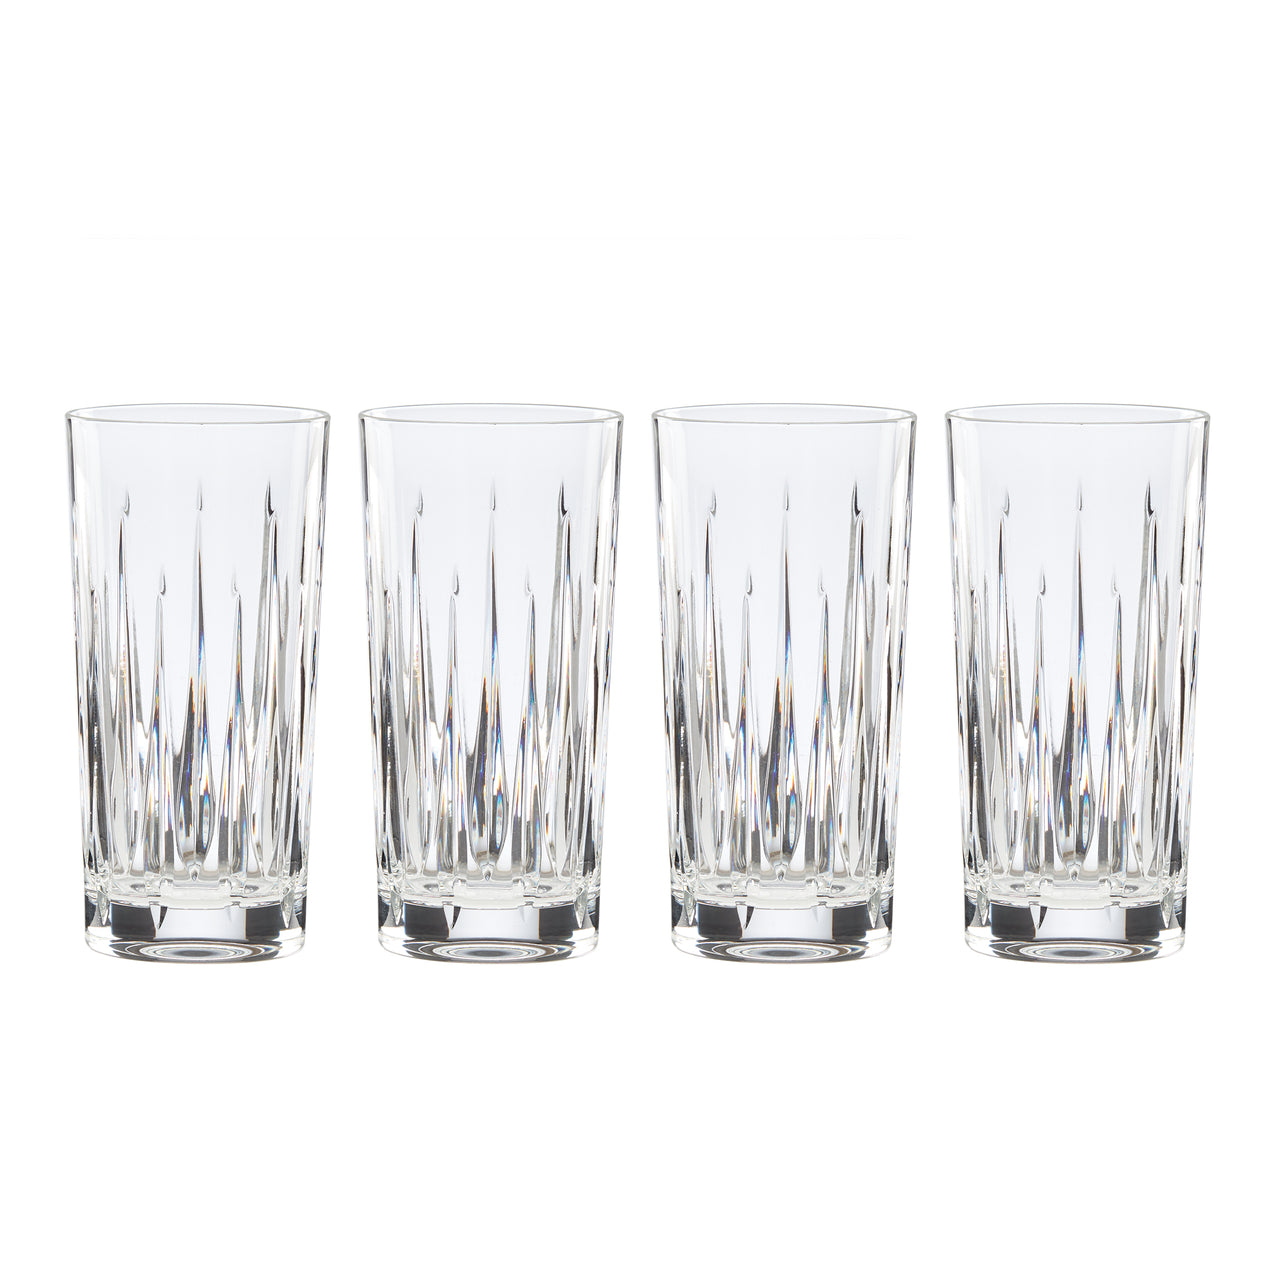 4 Pc. Pint Glass Set | waltersbeerpueblo